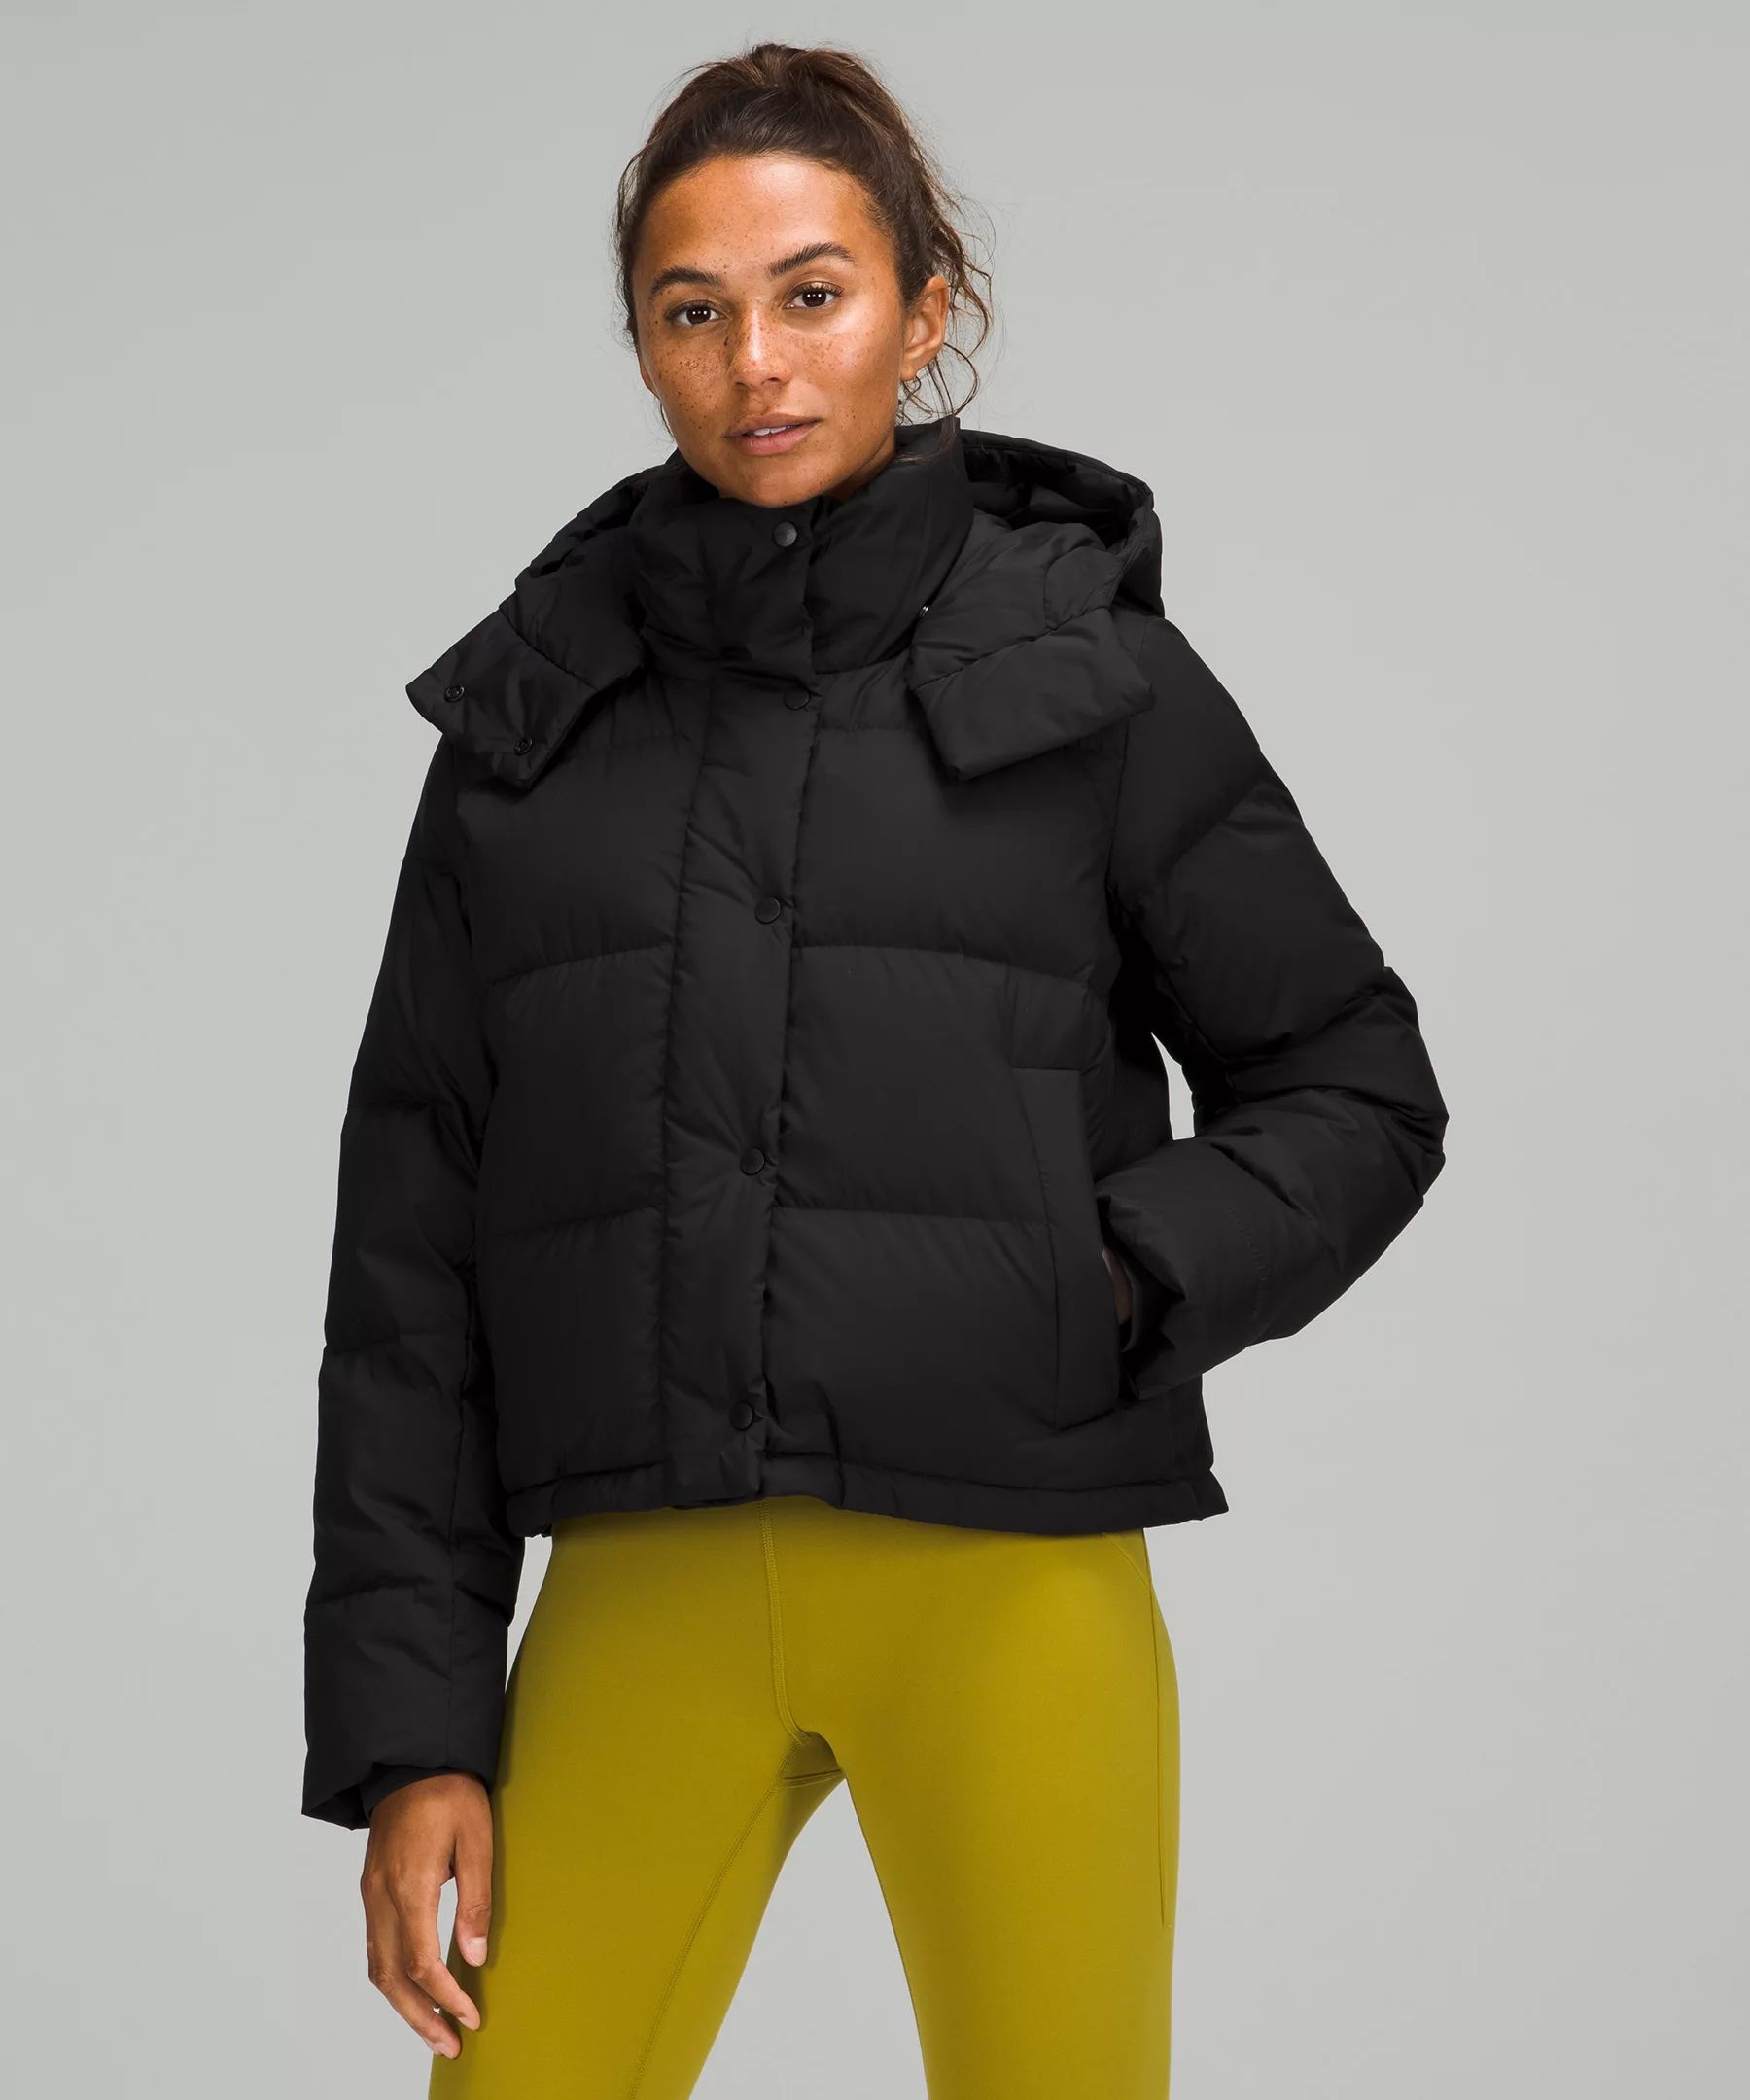 Wunder Puff Cropped Jacket | Women's Coats & Jackets | lululemon | Lululemon (US)